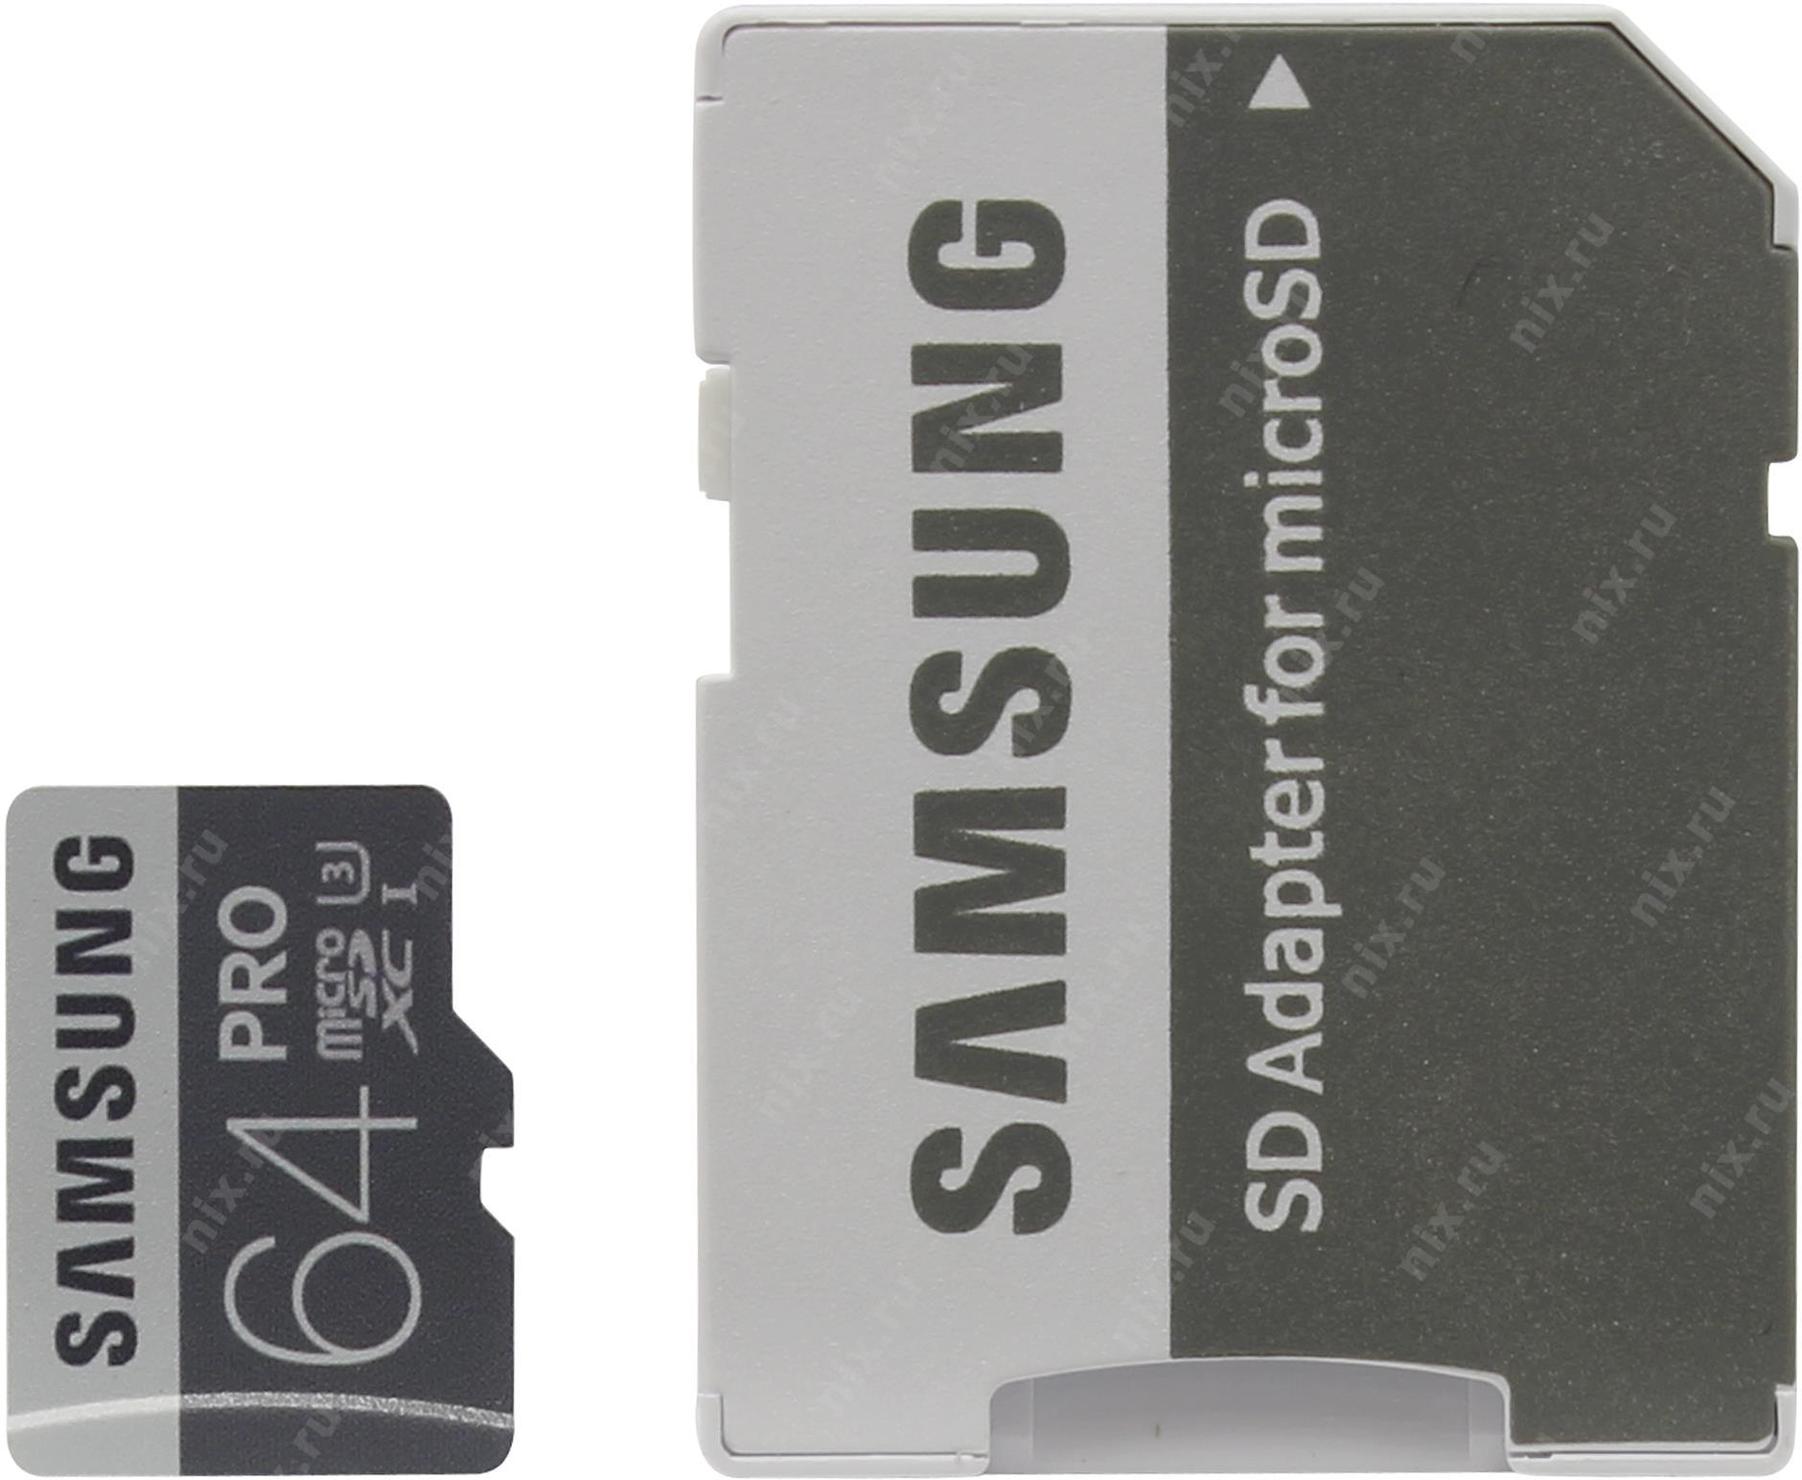 Samsung память 64 гб. Карта памяти Samsung MB-mg16ea. Samsung mb245. Карта памяти Samsung MB-mg64ea.